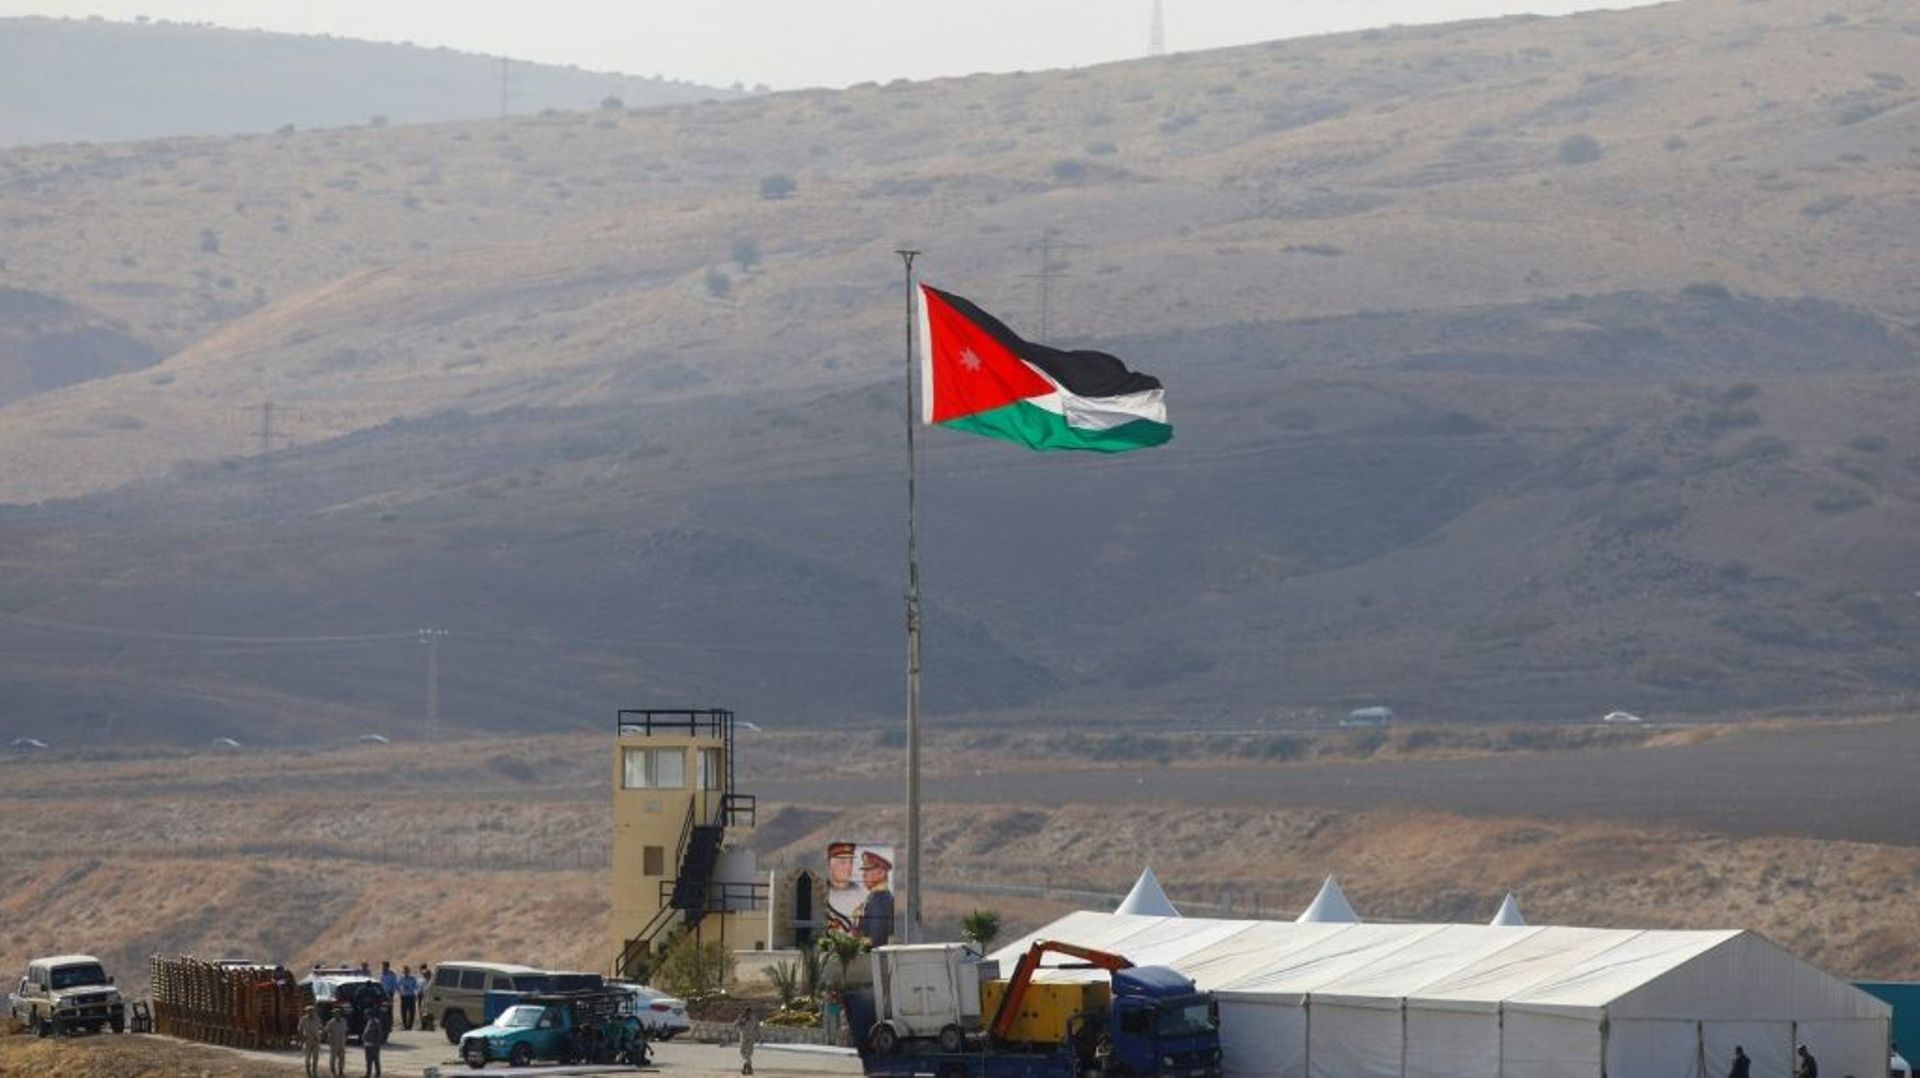 Image prise le 10 novembre 2019 côté israélien de la frontière jordanienne montrant des soldats jordaniens hissant le drapeau de leur pays dans le secteur de Naharayim/Baqoura qu'Amman vient de récupérer après avoir prêté ces terres agricoles à Israël pen